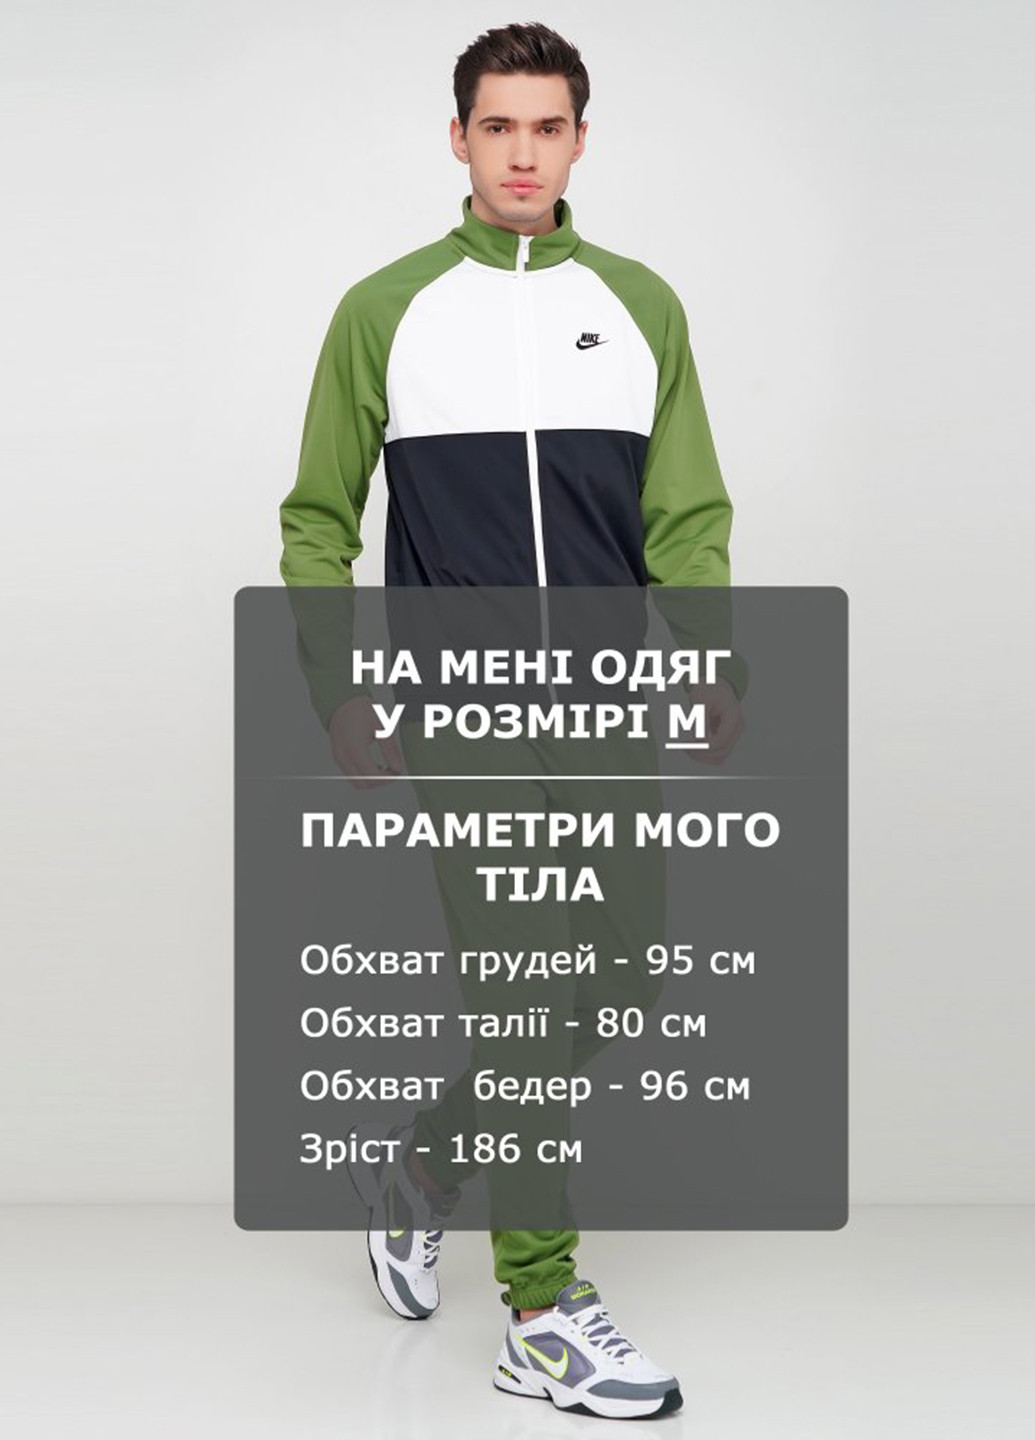 Зеленый демисезонный костюм (толстовка, брюки) брючный Nike M Nsw Ce Trk Suit Pk